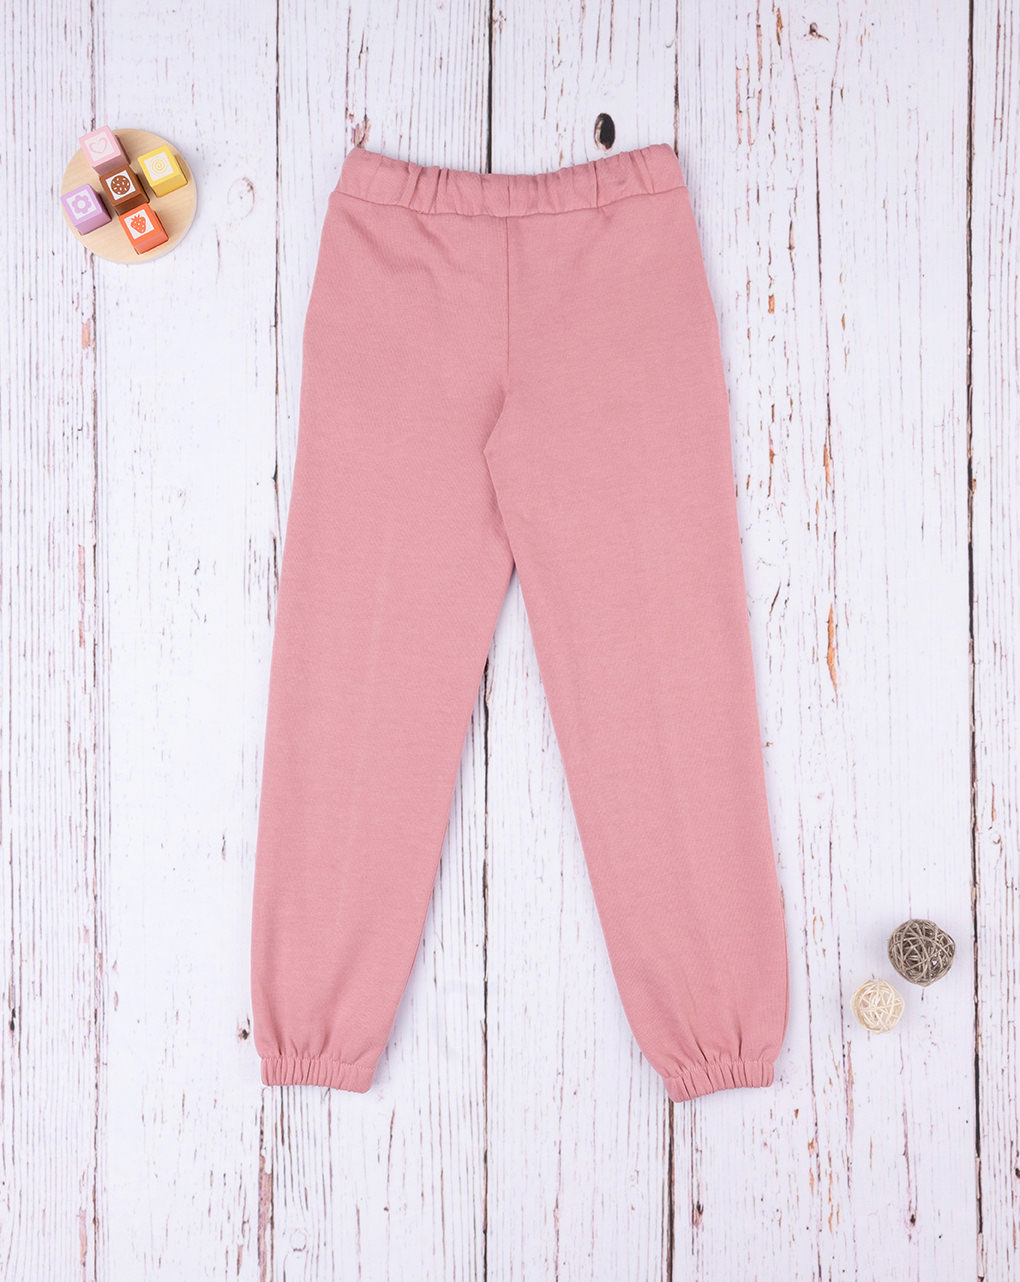 παιδικό παντελόνι φούτερ ροζ για κορίτσι - Prénatal